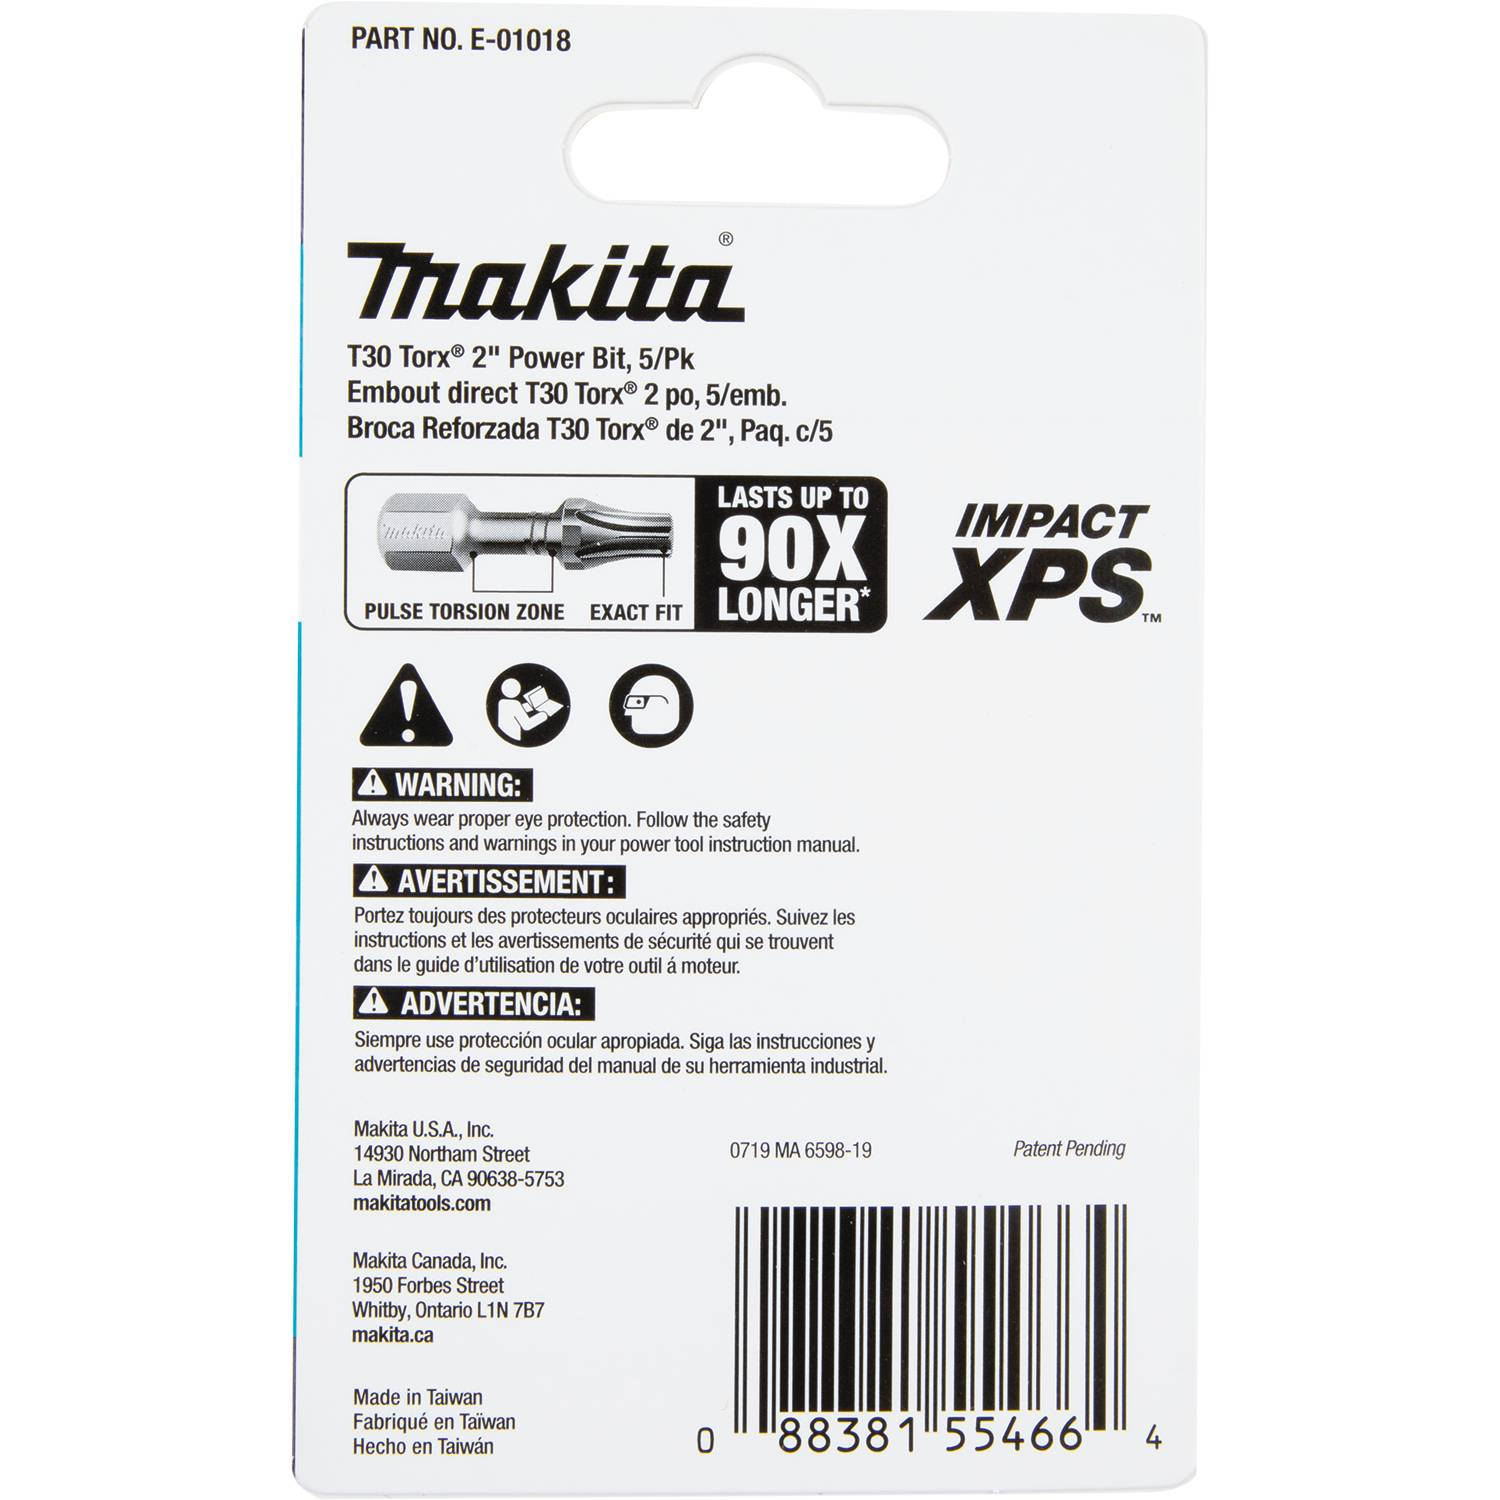 E-01018 Makita Impact XPS® T30 Torx 2' Power Bit, 5 Pack 3